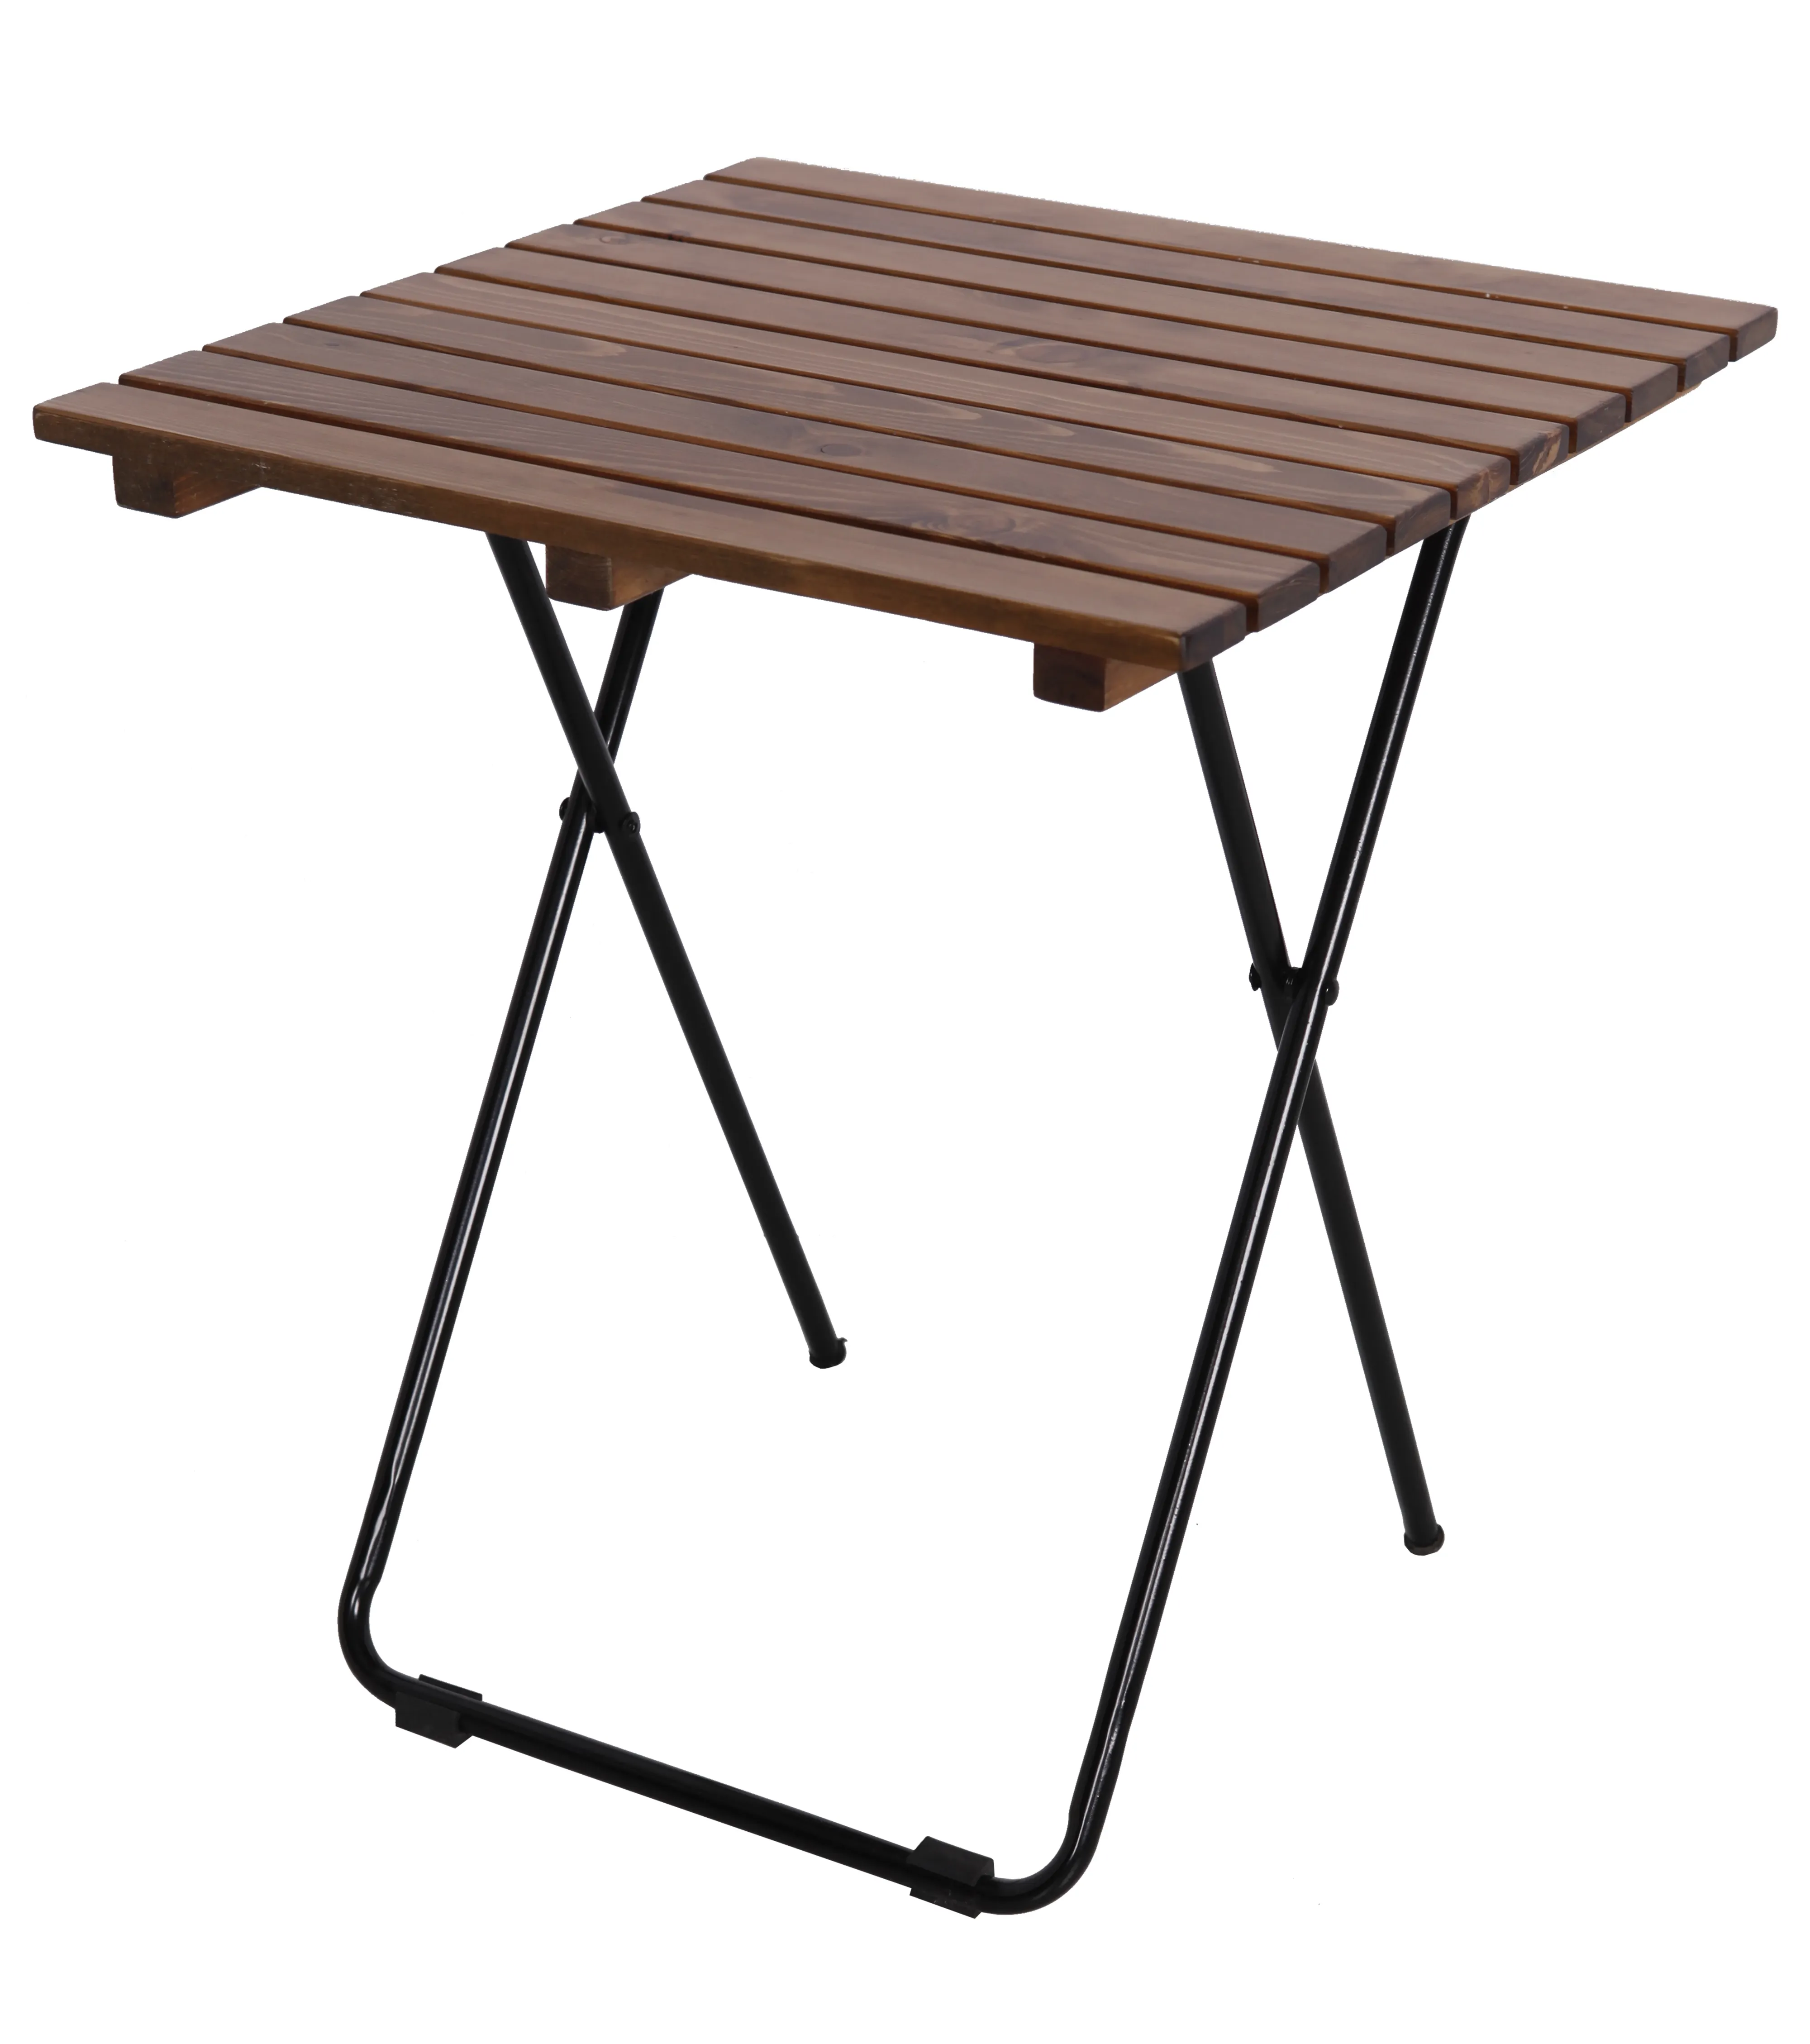 Venta al por mayor de madera mesa cuadrada portátil CAMPING al aire libre mesa plegable MESA DE